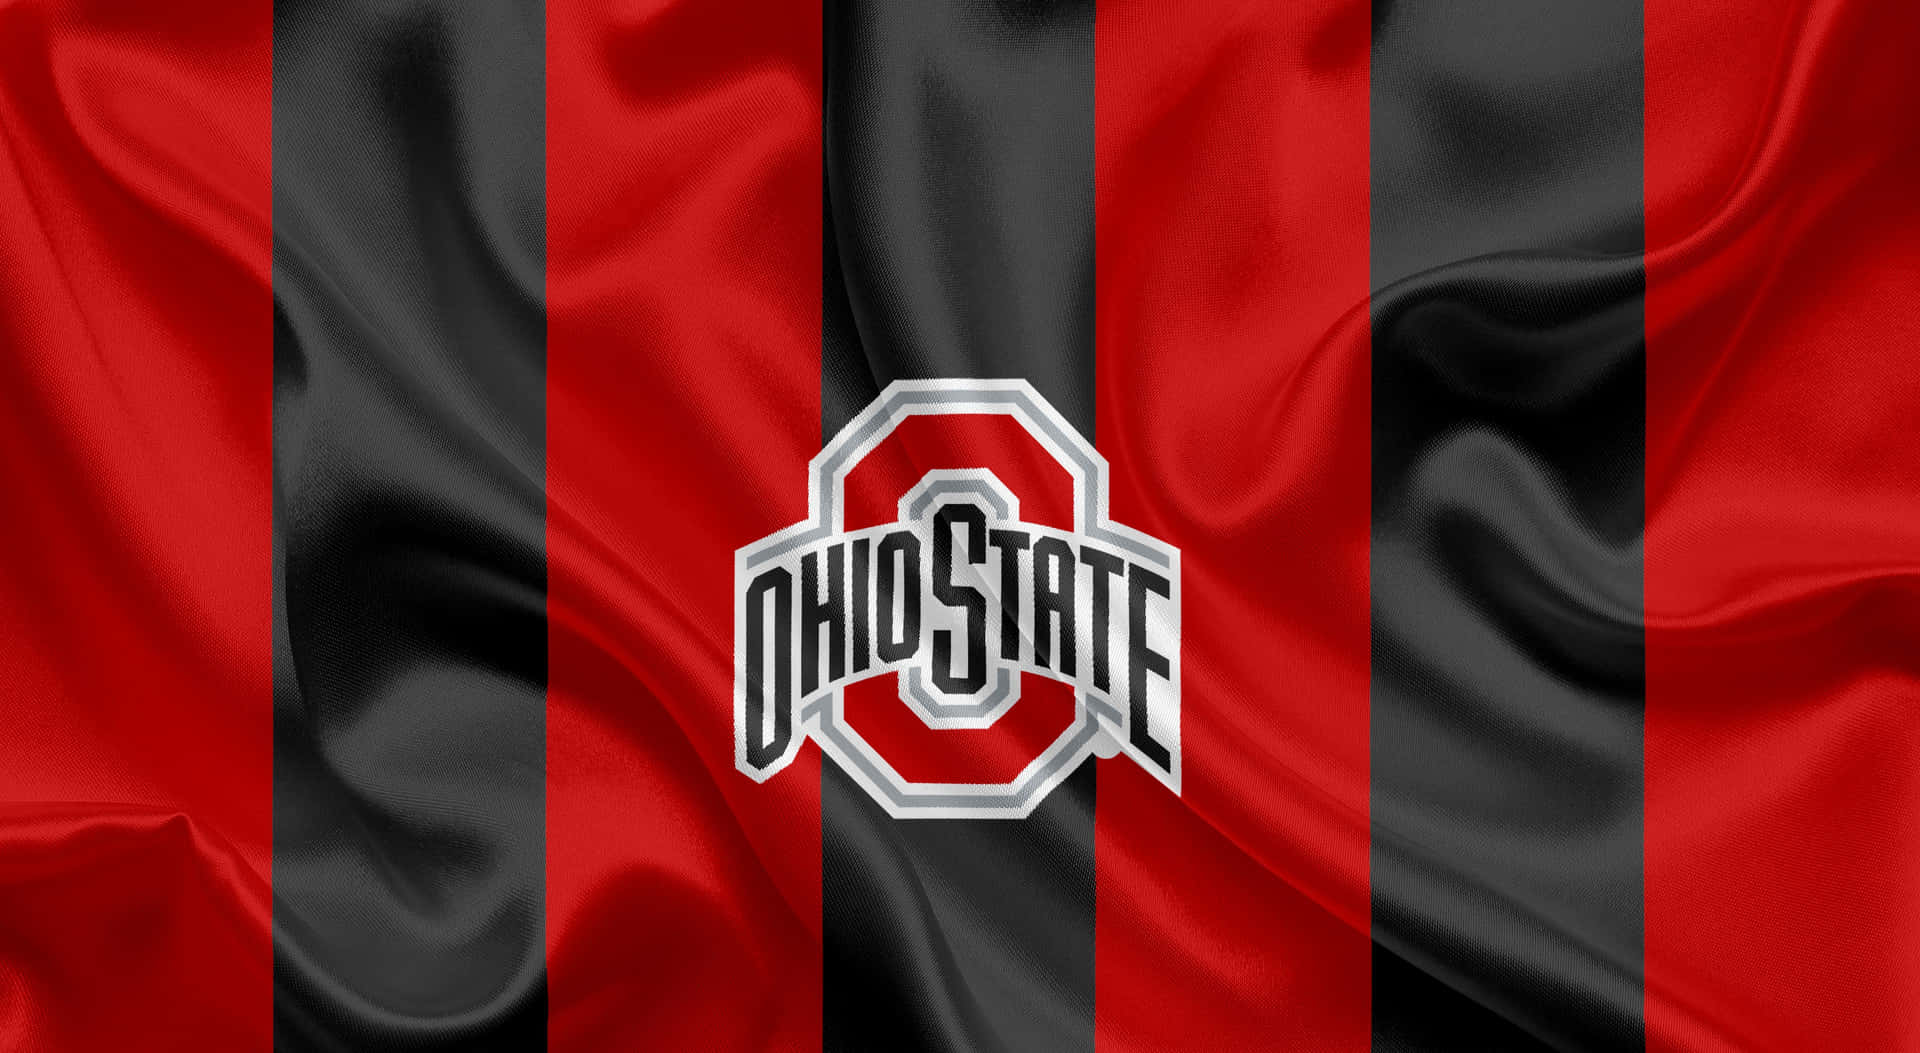 Logotipode La Universidad Estatal De Ohio Sobre Un Fondo Rojo Y Negro Fondo de pantalla